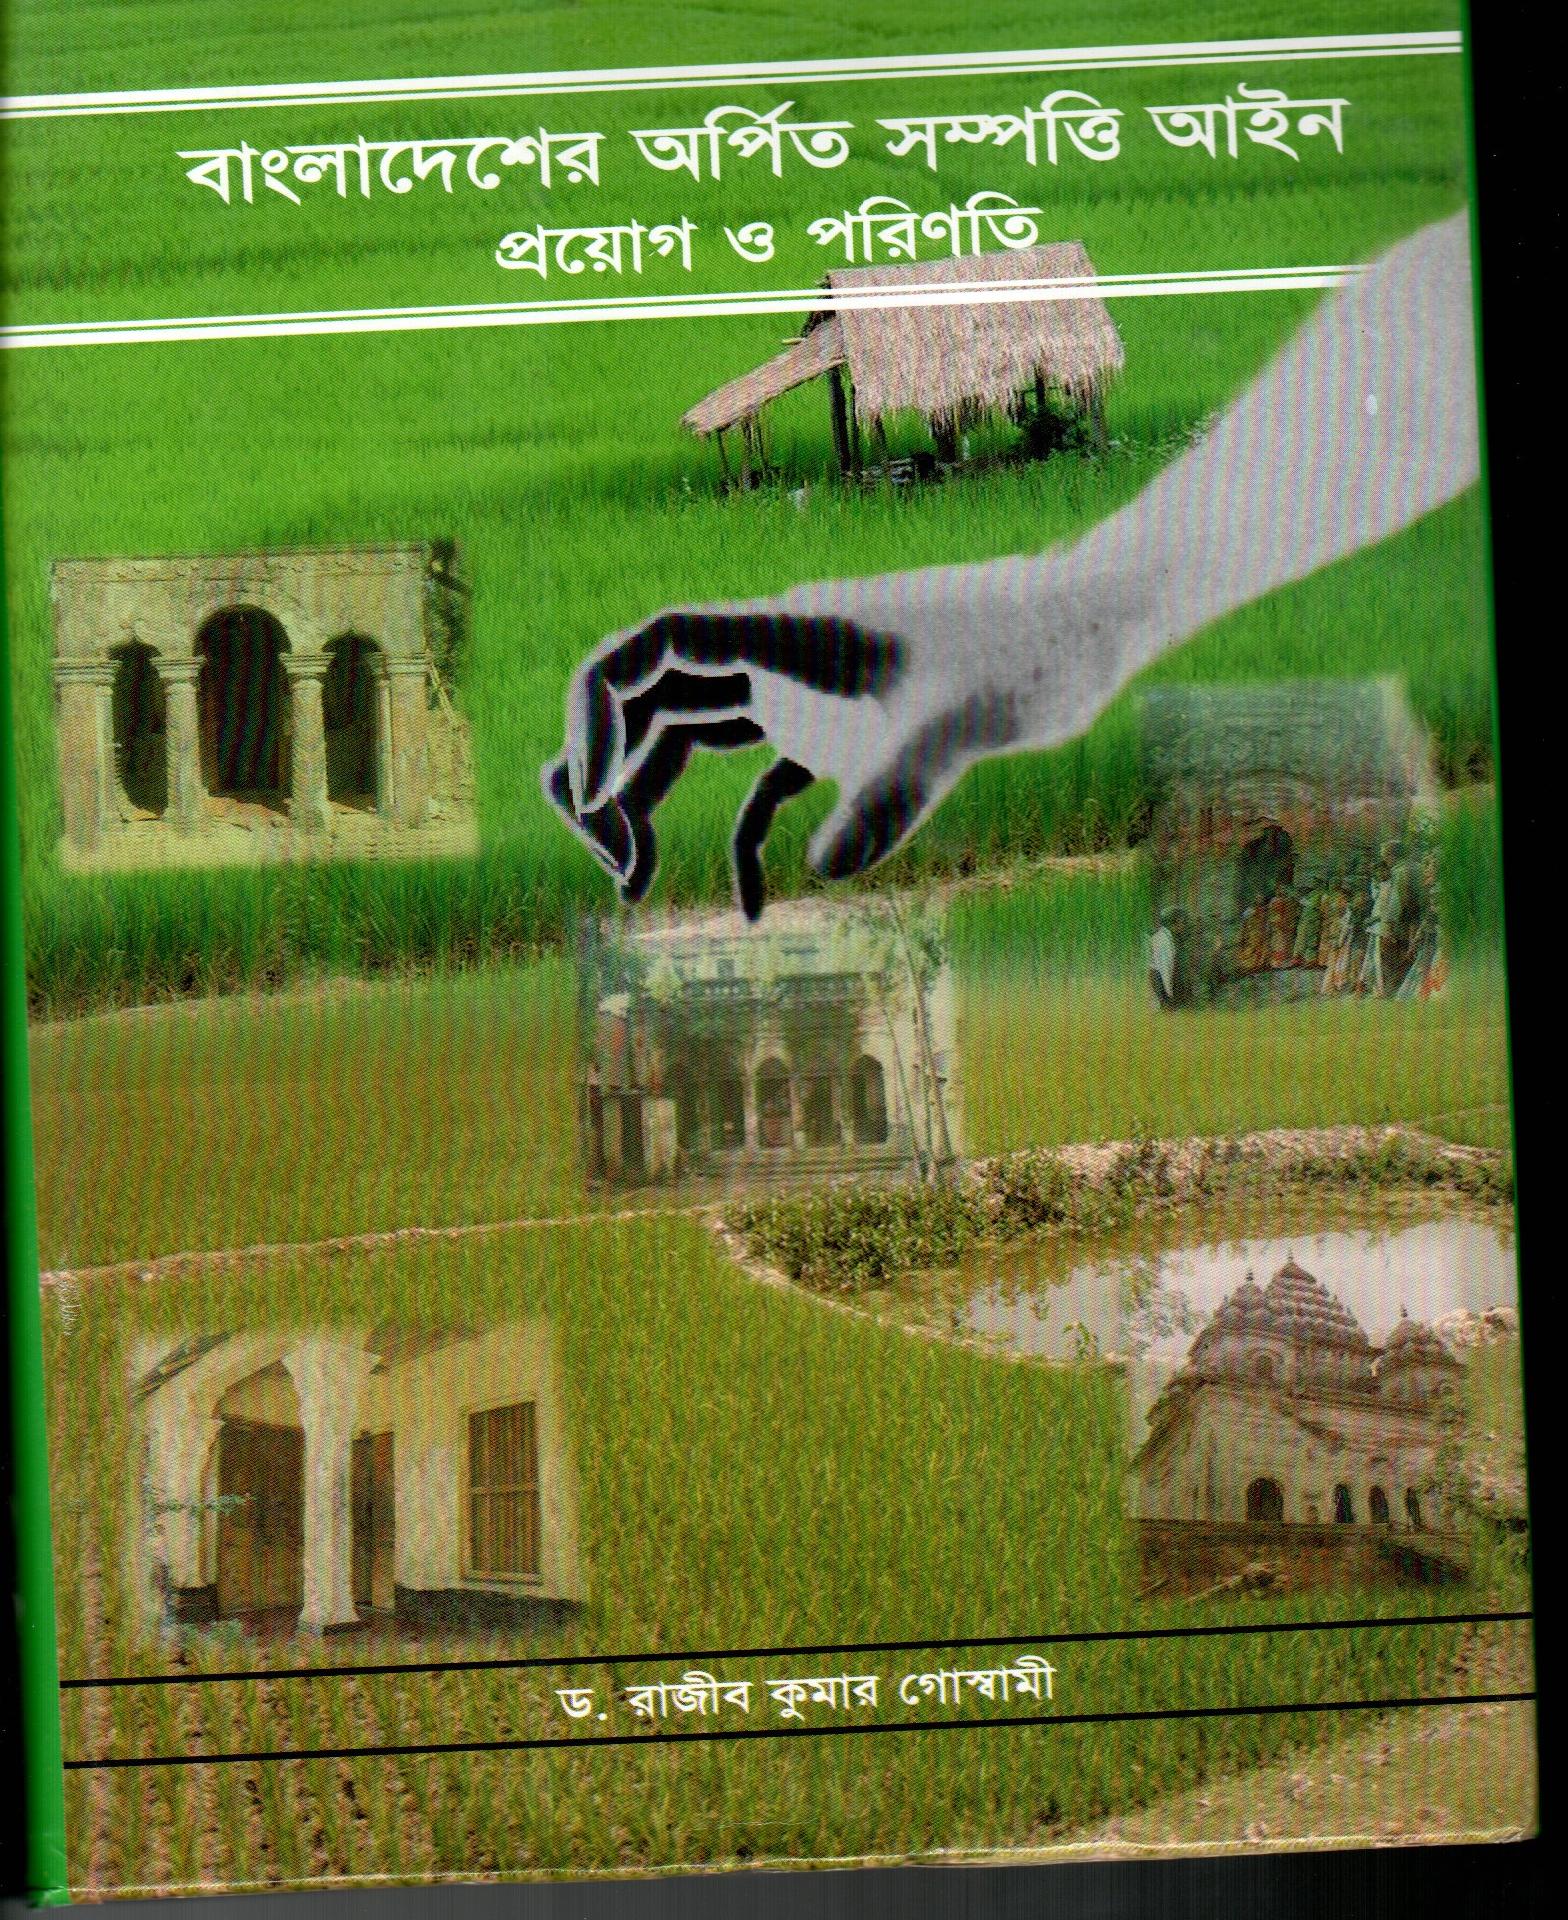 Bangladesher arpito sampatti ain proyog o porinoti